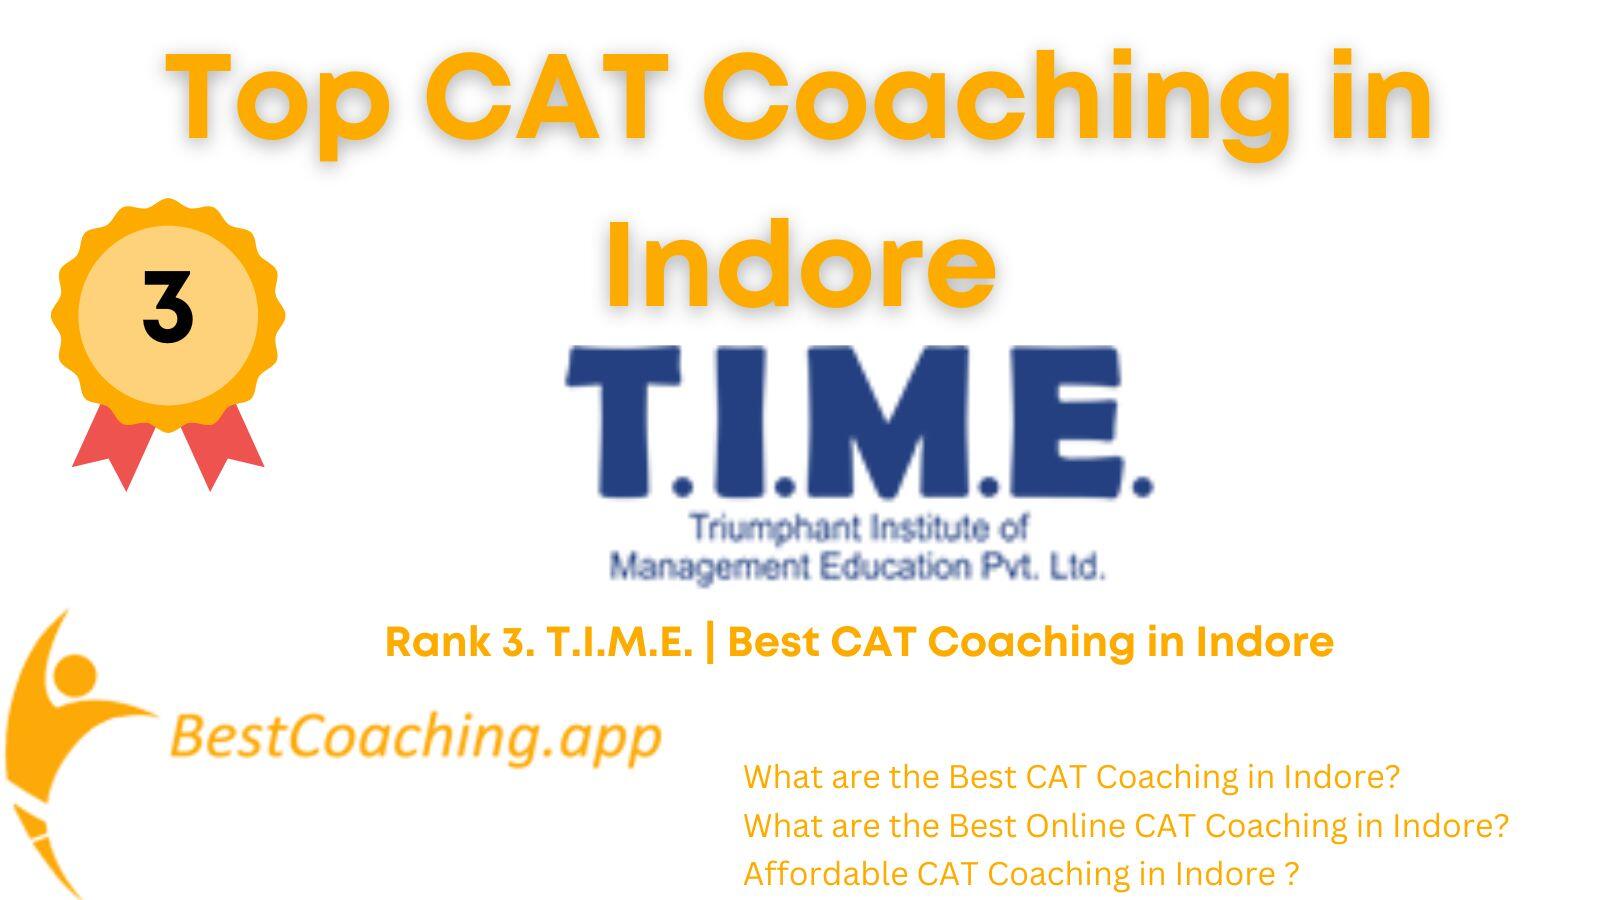 Rank 3. T.I.M.E. Best CAT Coaching in Indore